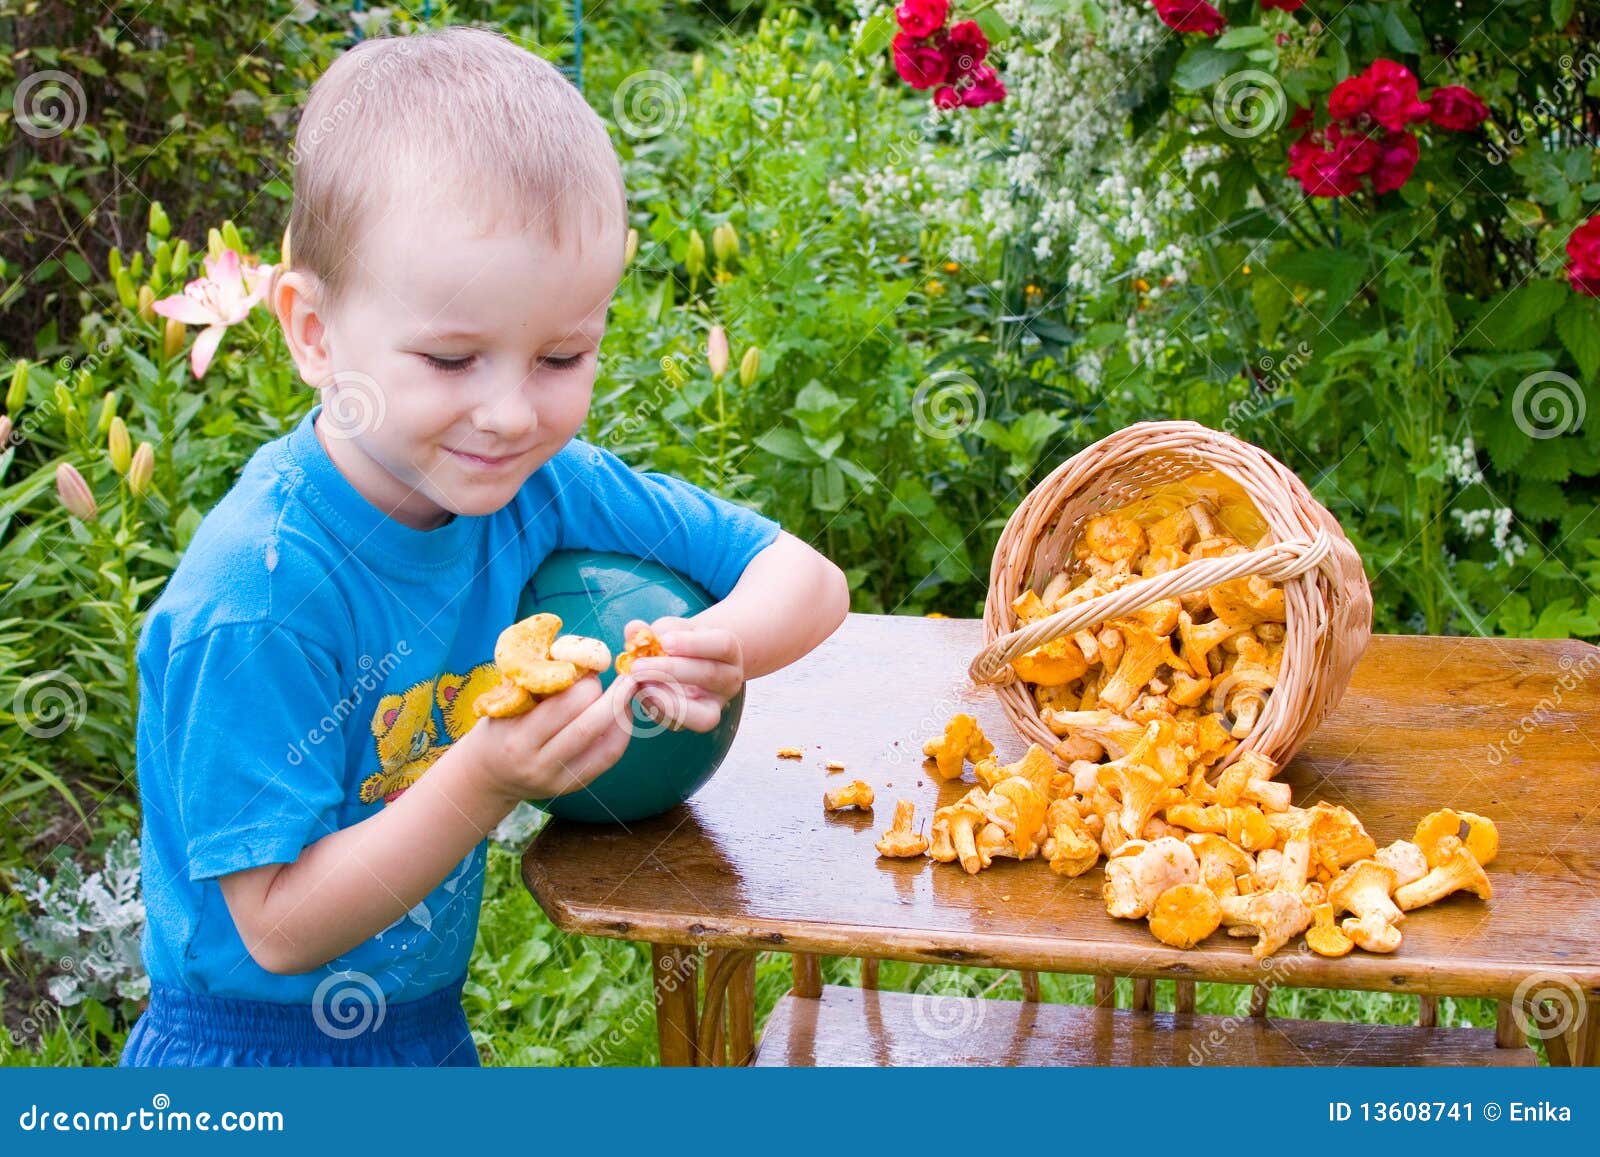 С какого возраста можно давать ребенку грибы